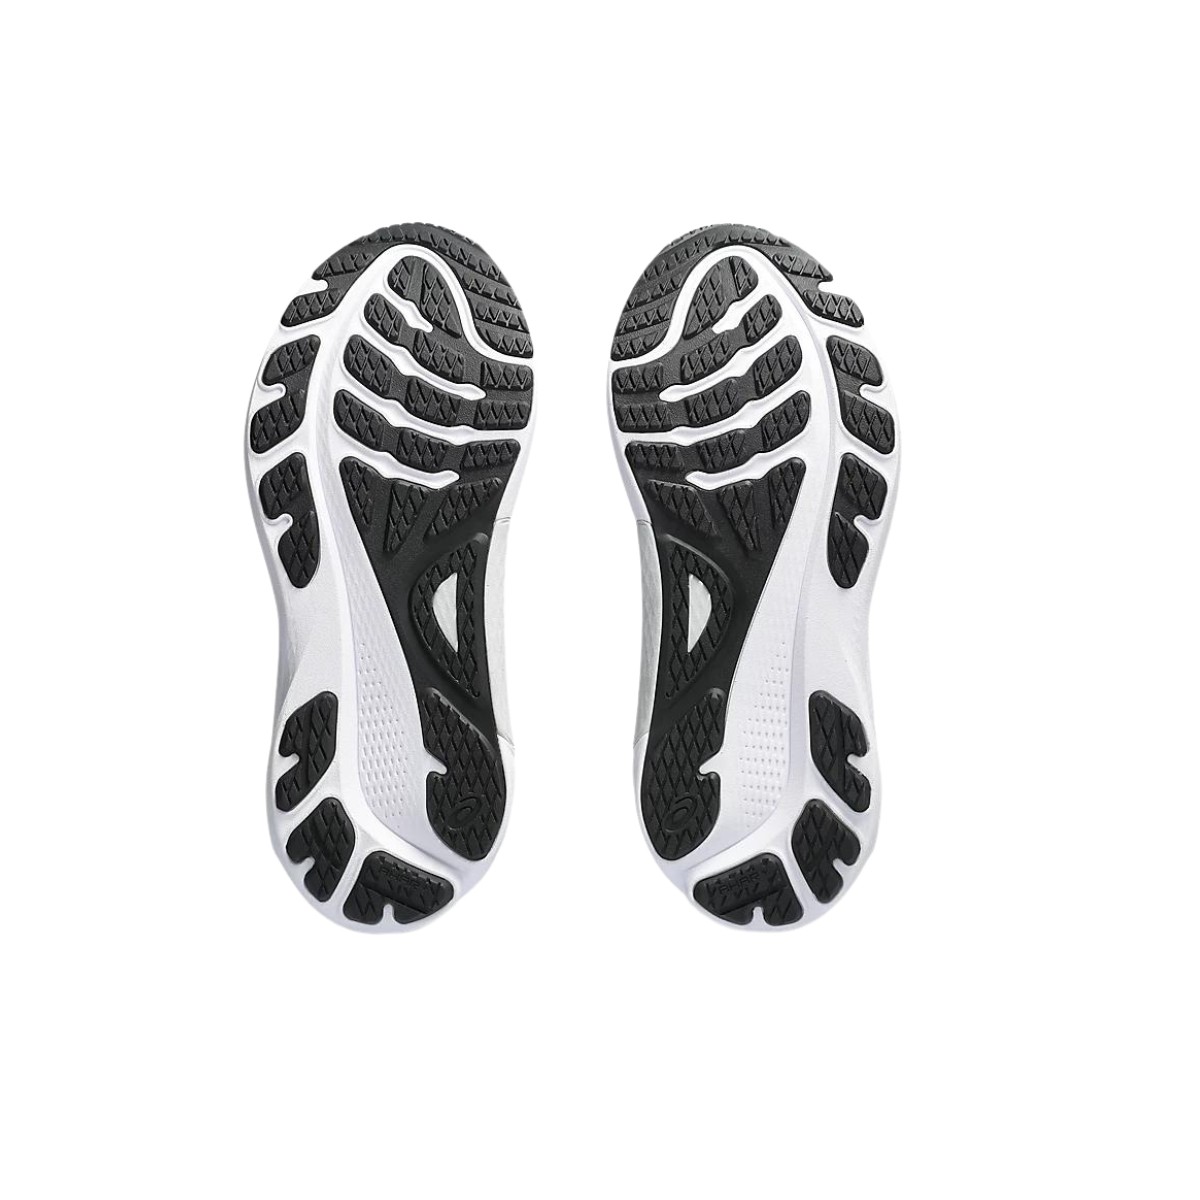 Asics Gel-Kayano 30 Black White Shoes. Free shipping.